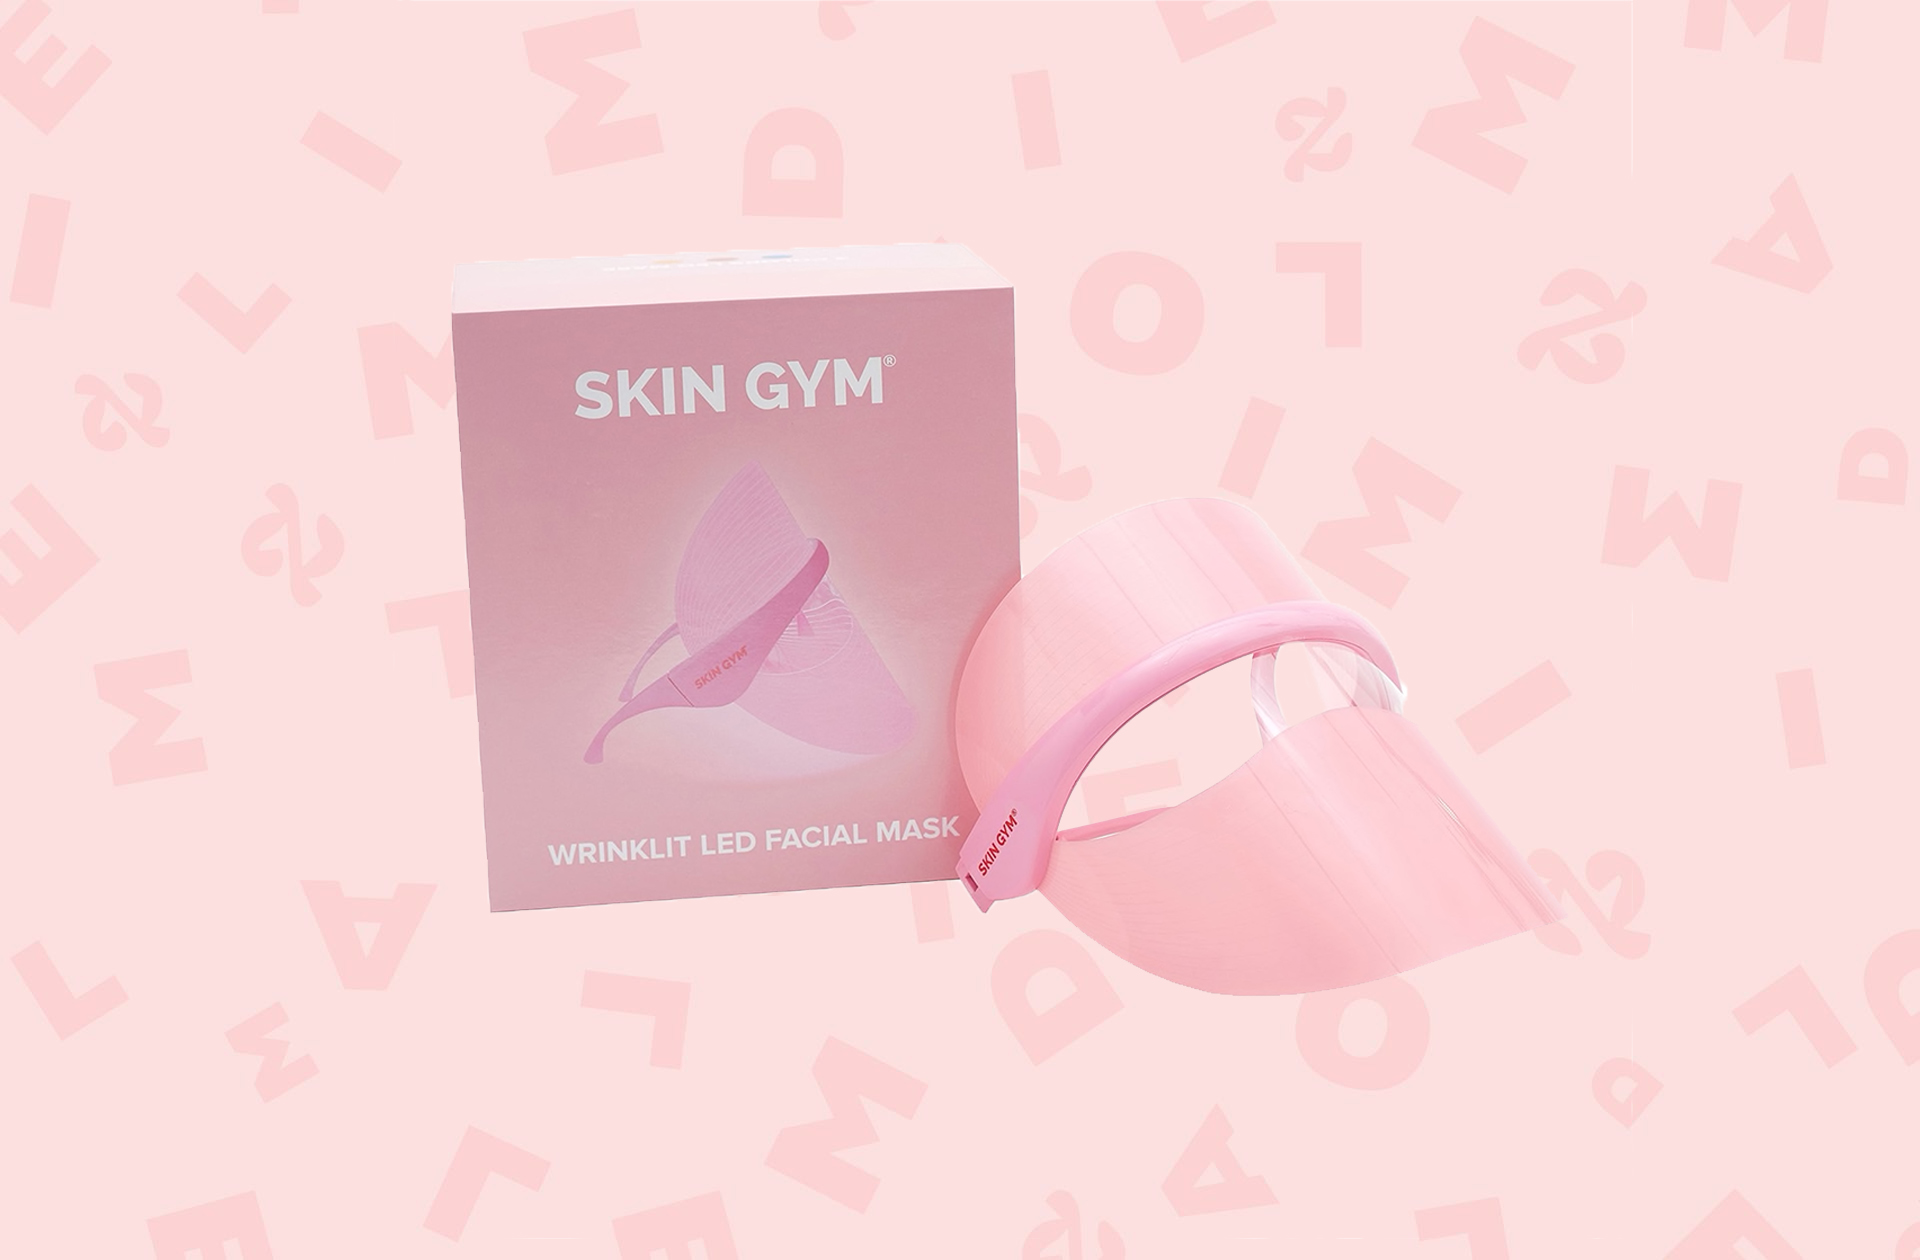 J’ai testé le masque LED WrinkLit de Skin Gym qui fait rimer skincare avec douceur